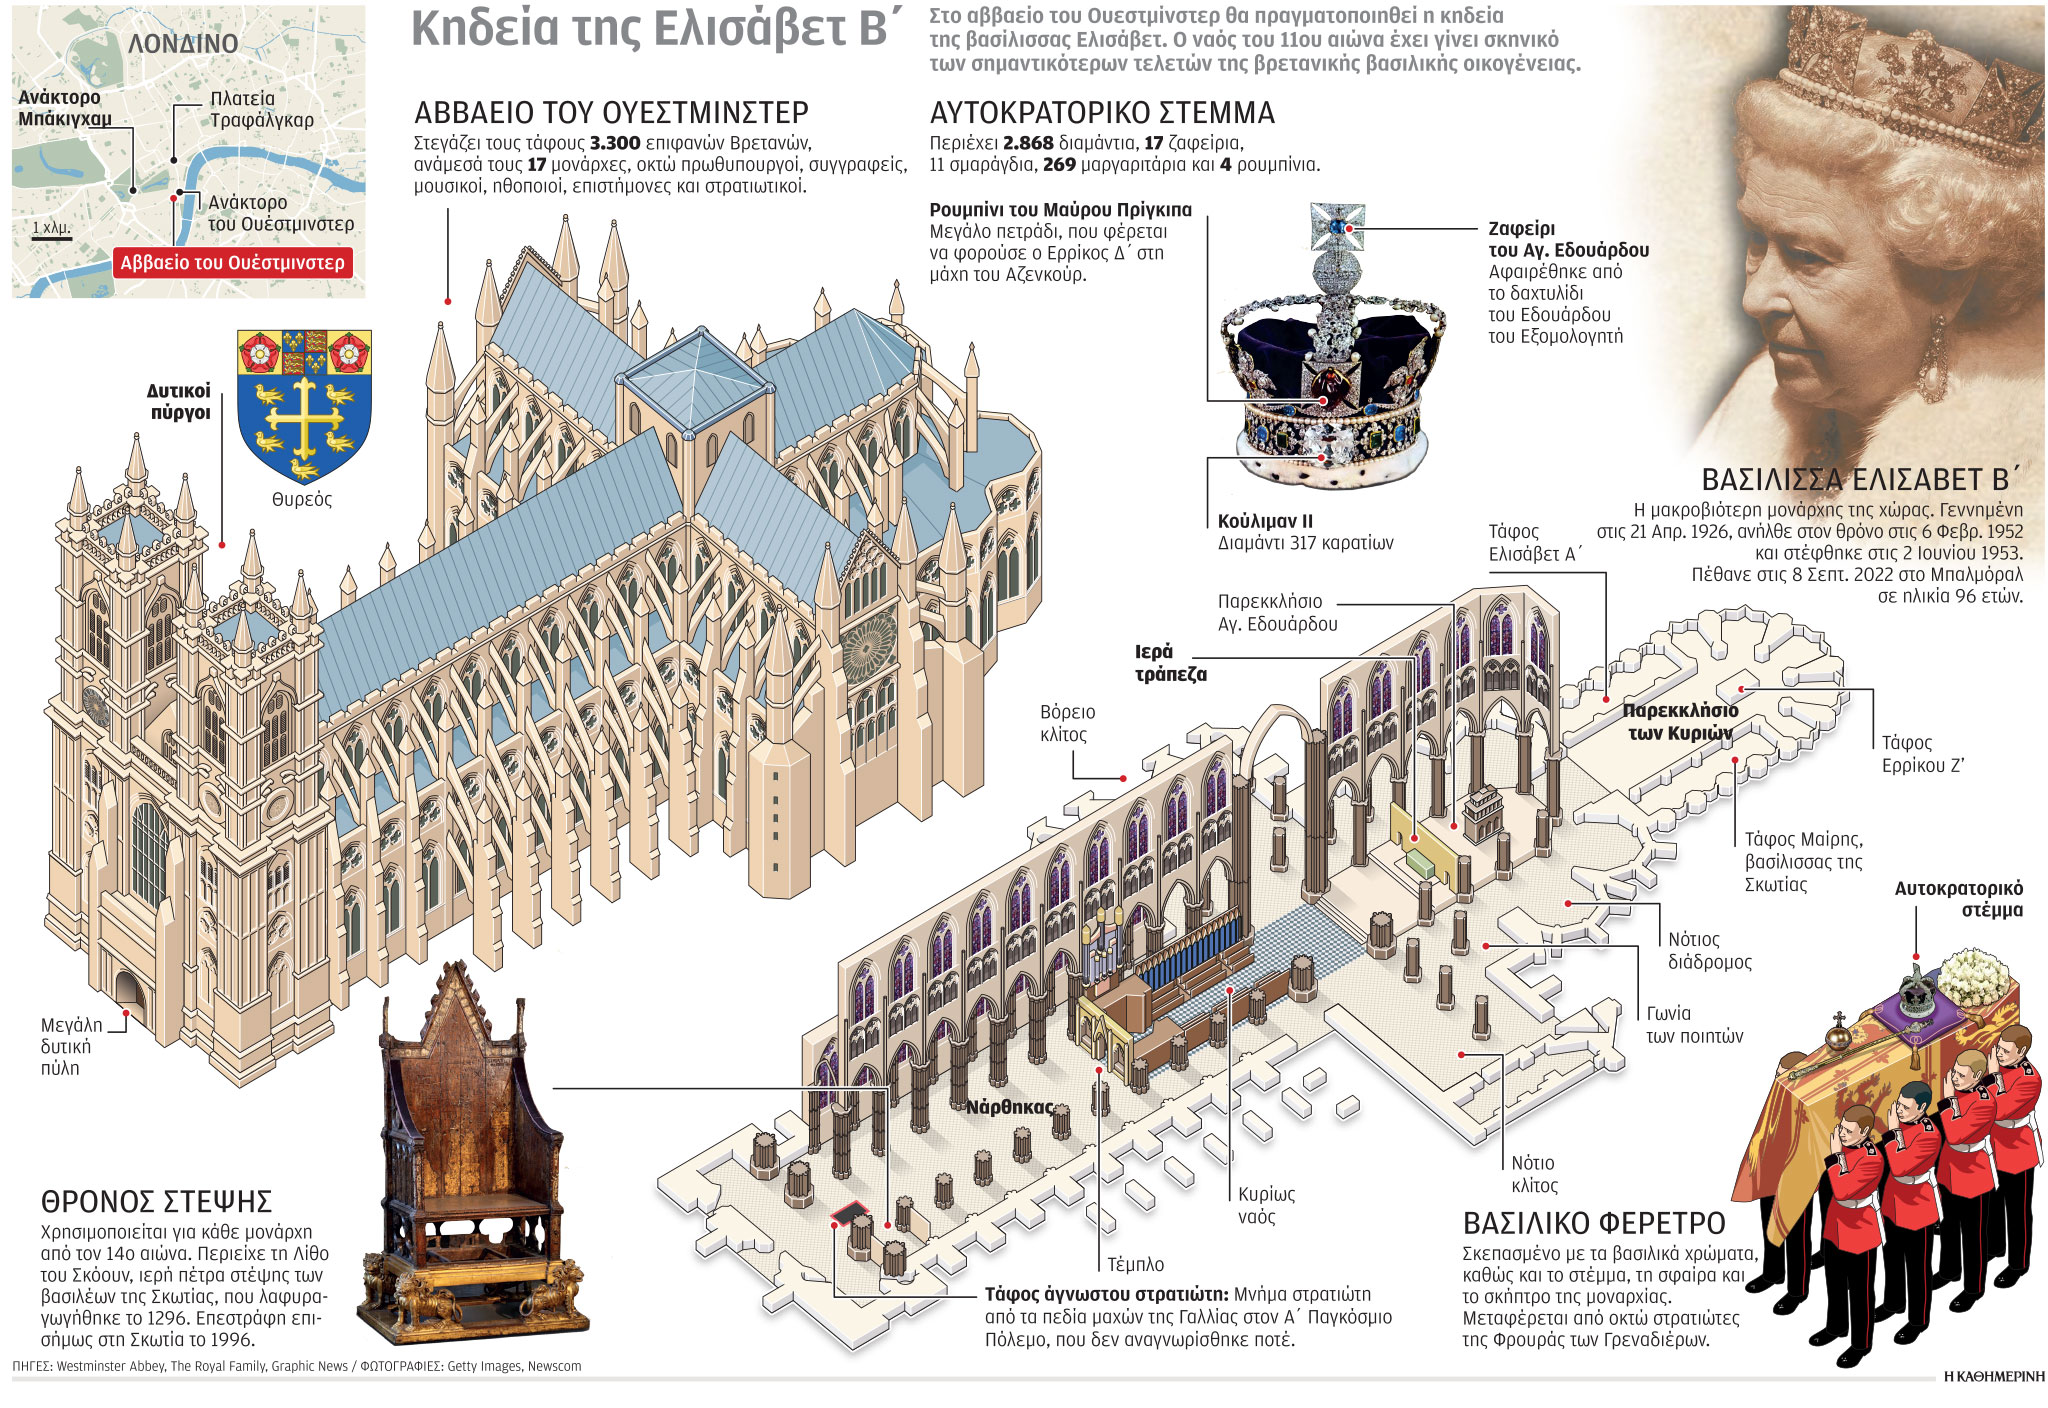 Βρετανία: Σήμερα ανακηρύσσεται επισήμως βασιλιάς ο Κάρολος Γ’-1